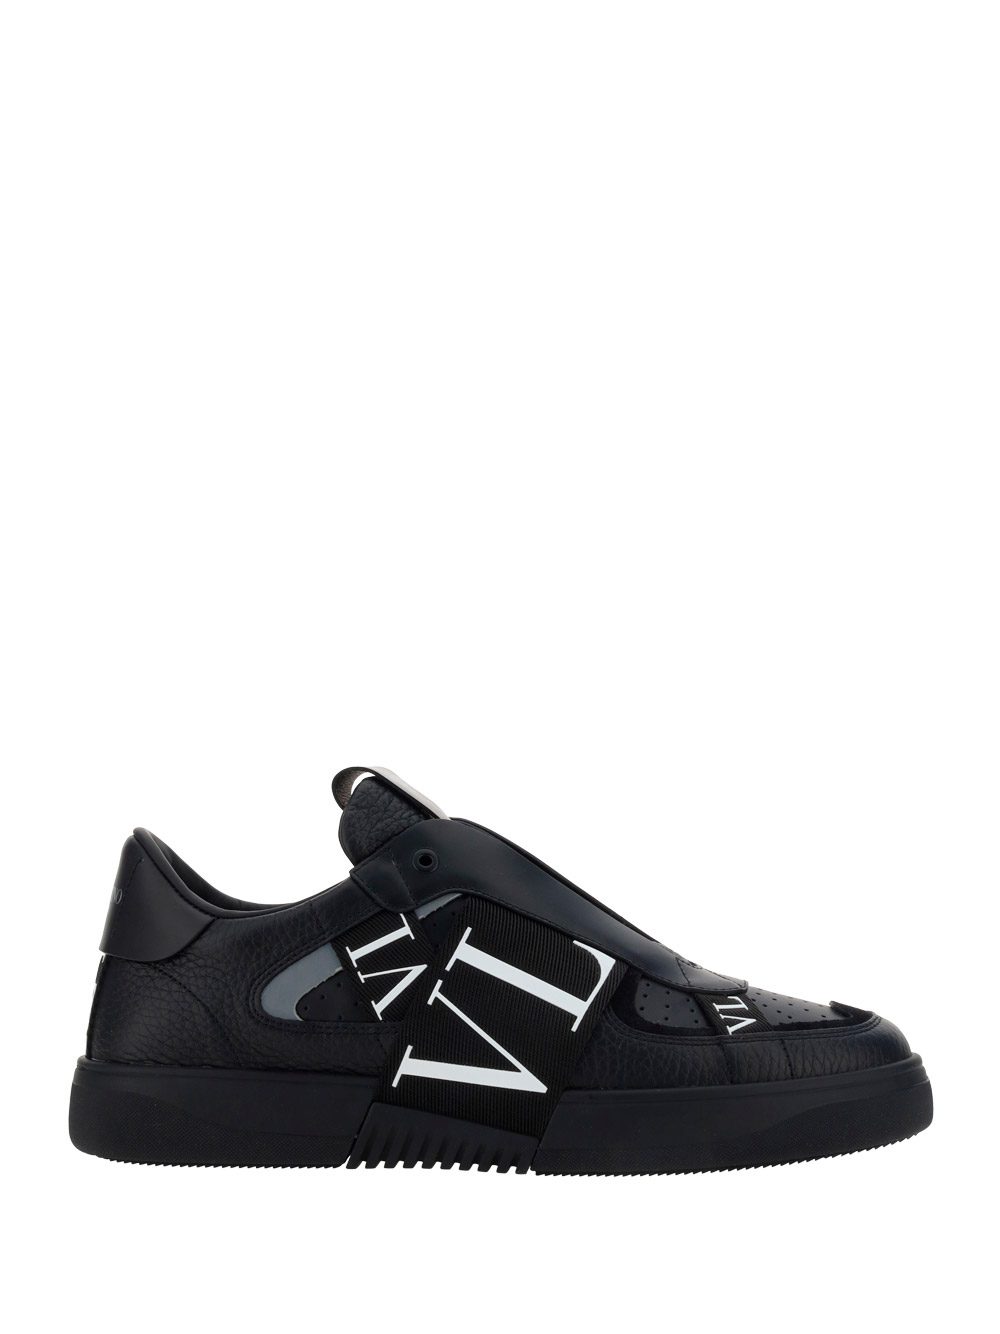 Valentino Garavani Black 'vl7n' Slip-on Sneakers In Nero | ModeSens